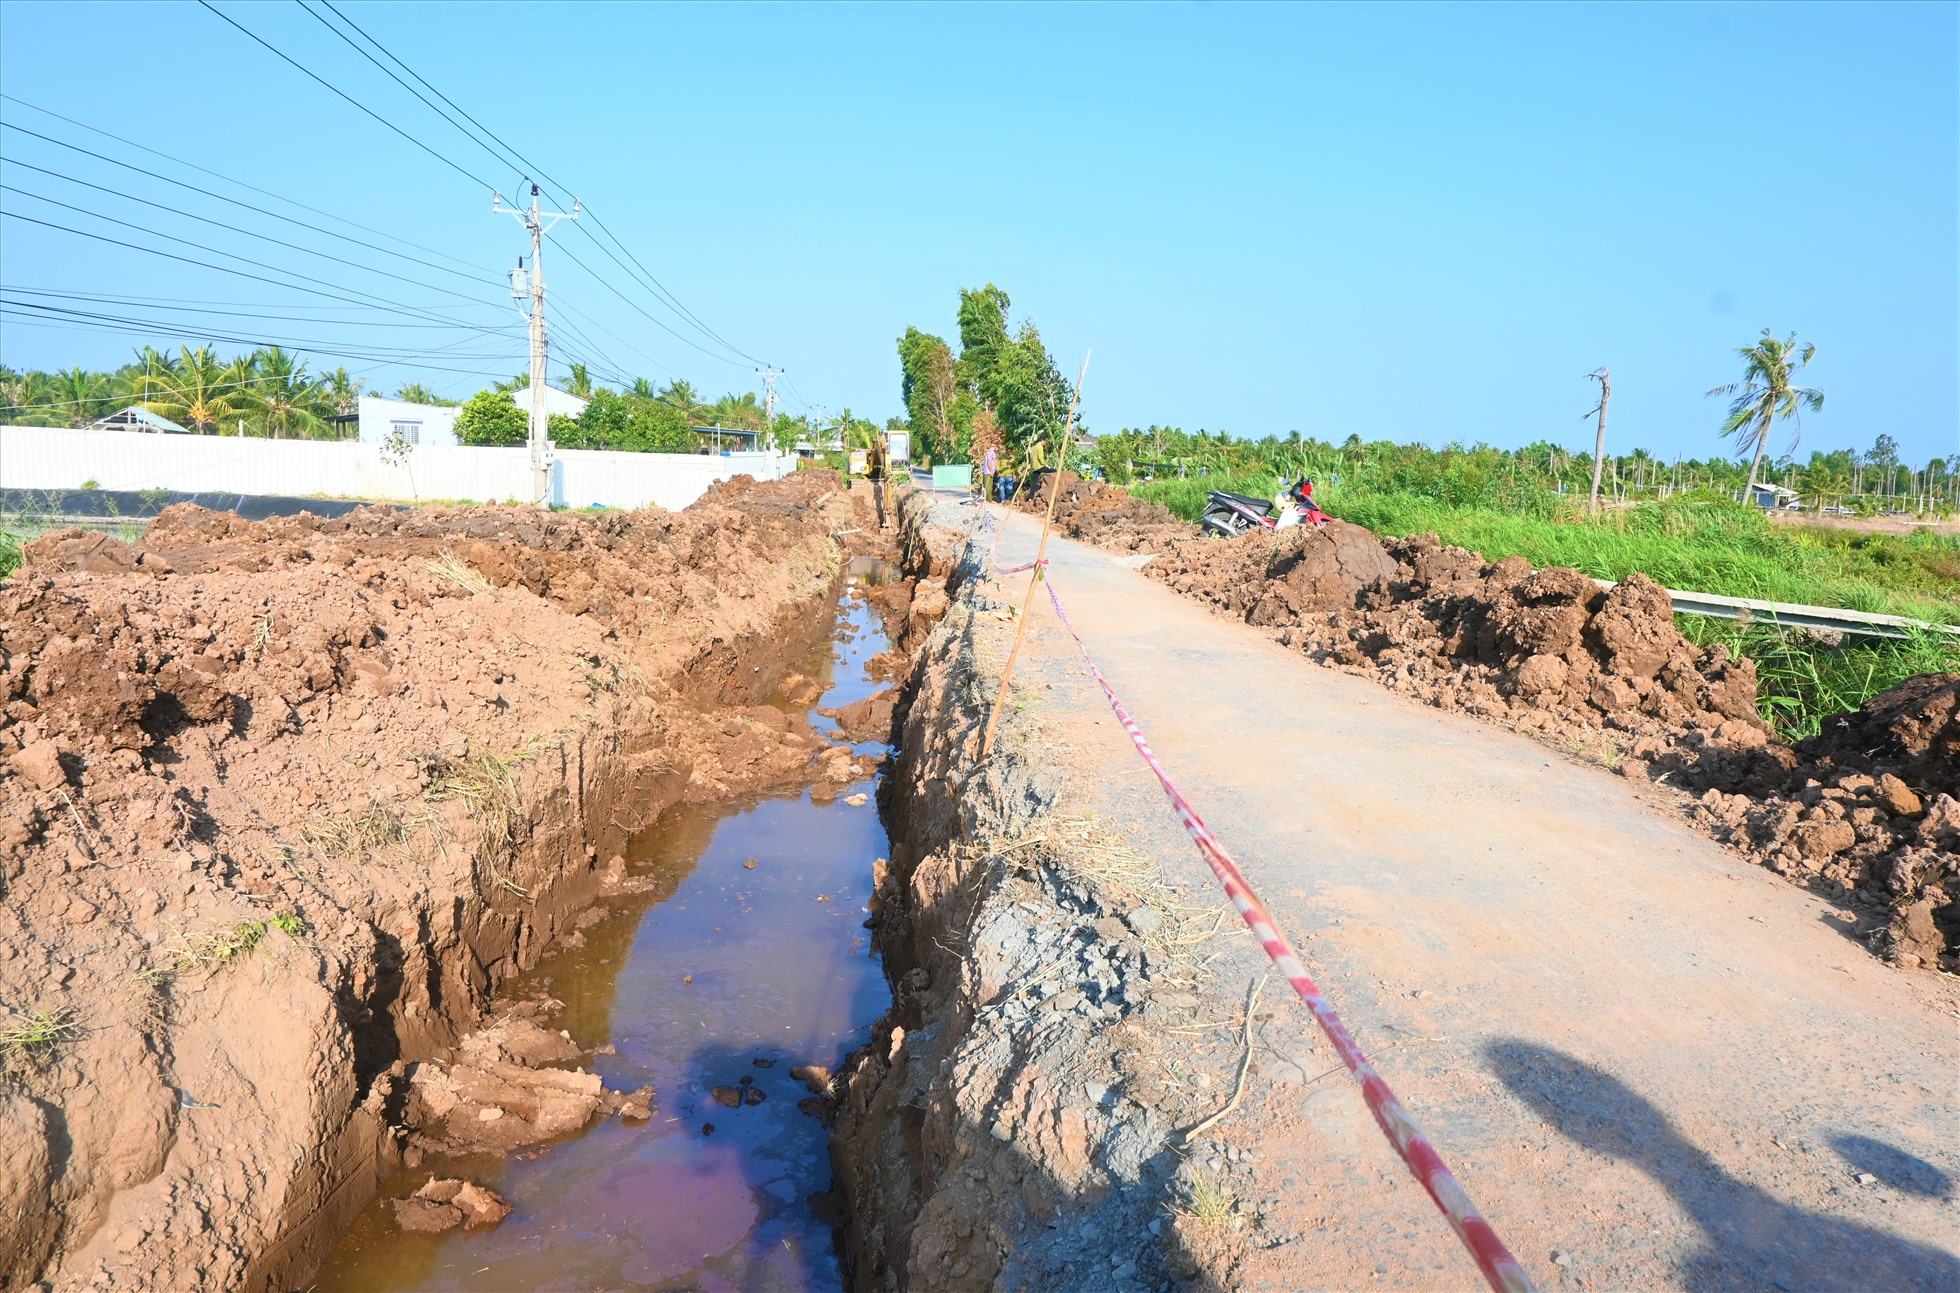 Dự án mở rộng đường trung tâm xã Tân Thạnh (Dự án ĐH83C) đoạn còn lại, với chiều dài hơn 8km. Dự án này do UBND huyện Tân Phú Đông (tỉnh Tiền Giang) làm chủ đầu tư.